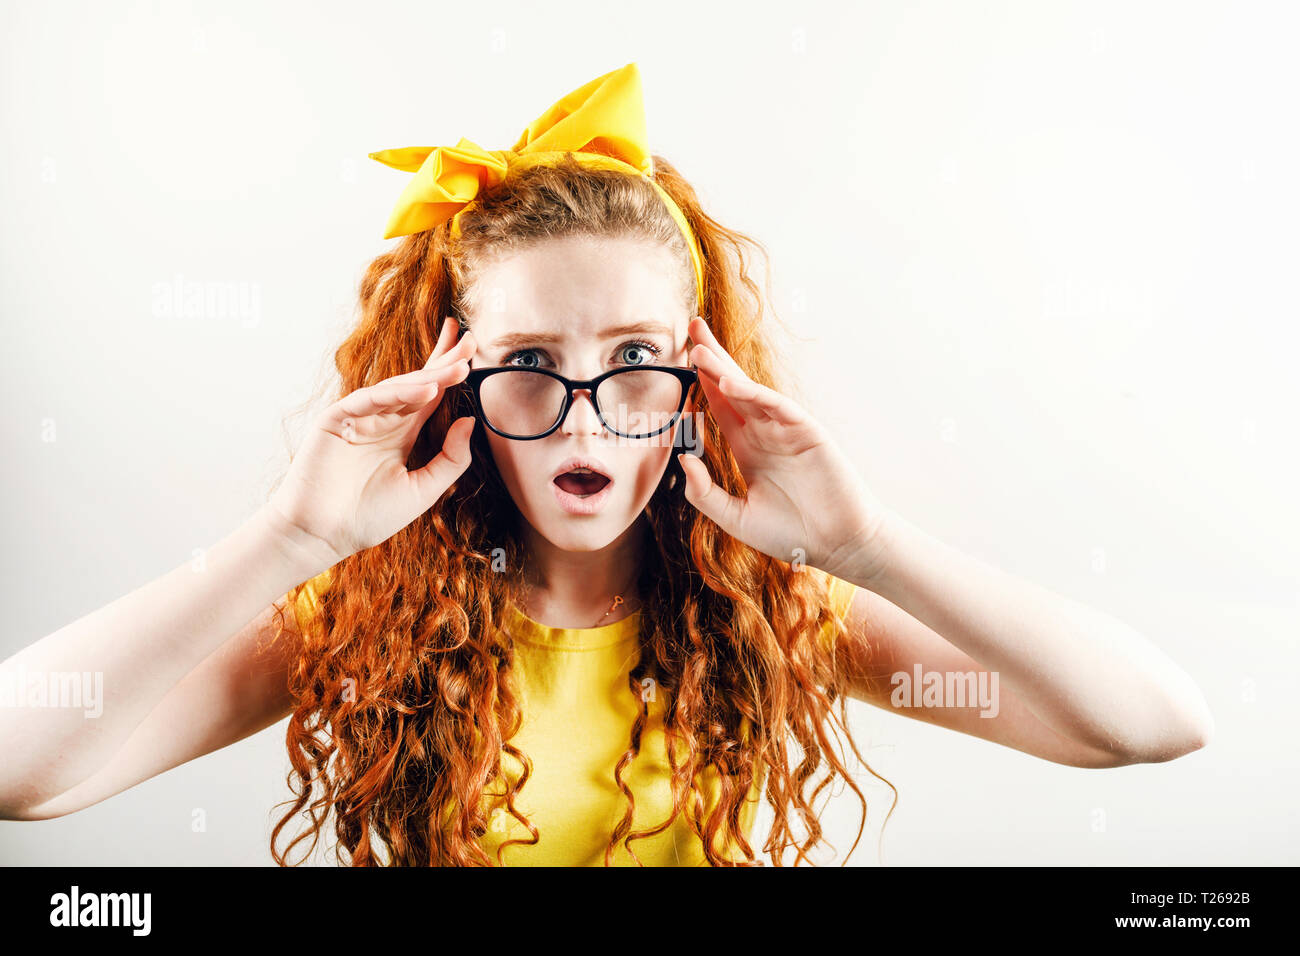 Sorprendido chica pelirroja rizada en los vasos con un arco amarillo sobre su cabeza vistiendo camiseta amarilla mirando a la cámara con emoción schoked Foto de stock